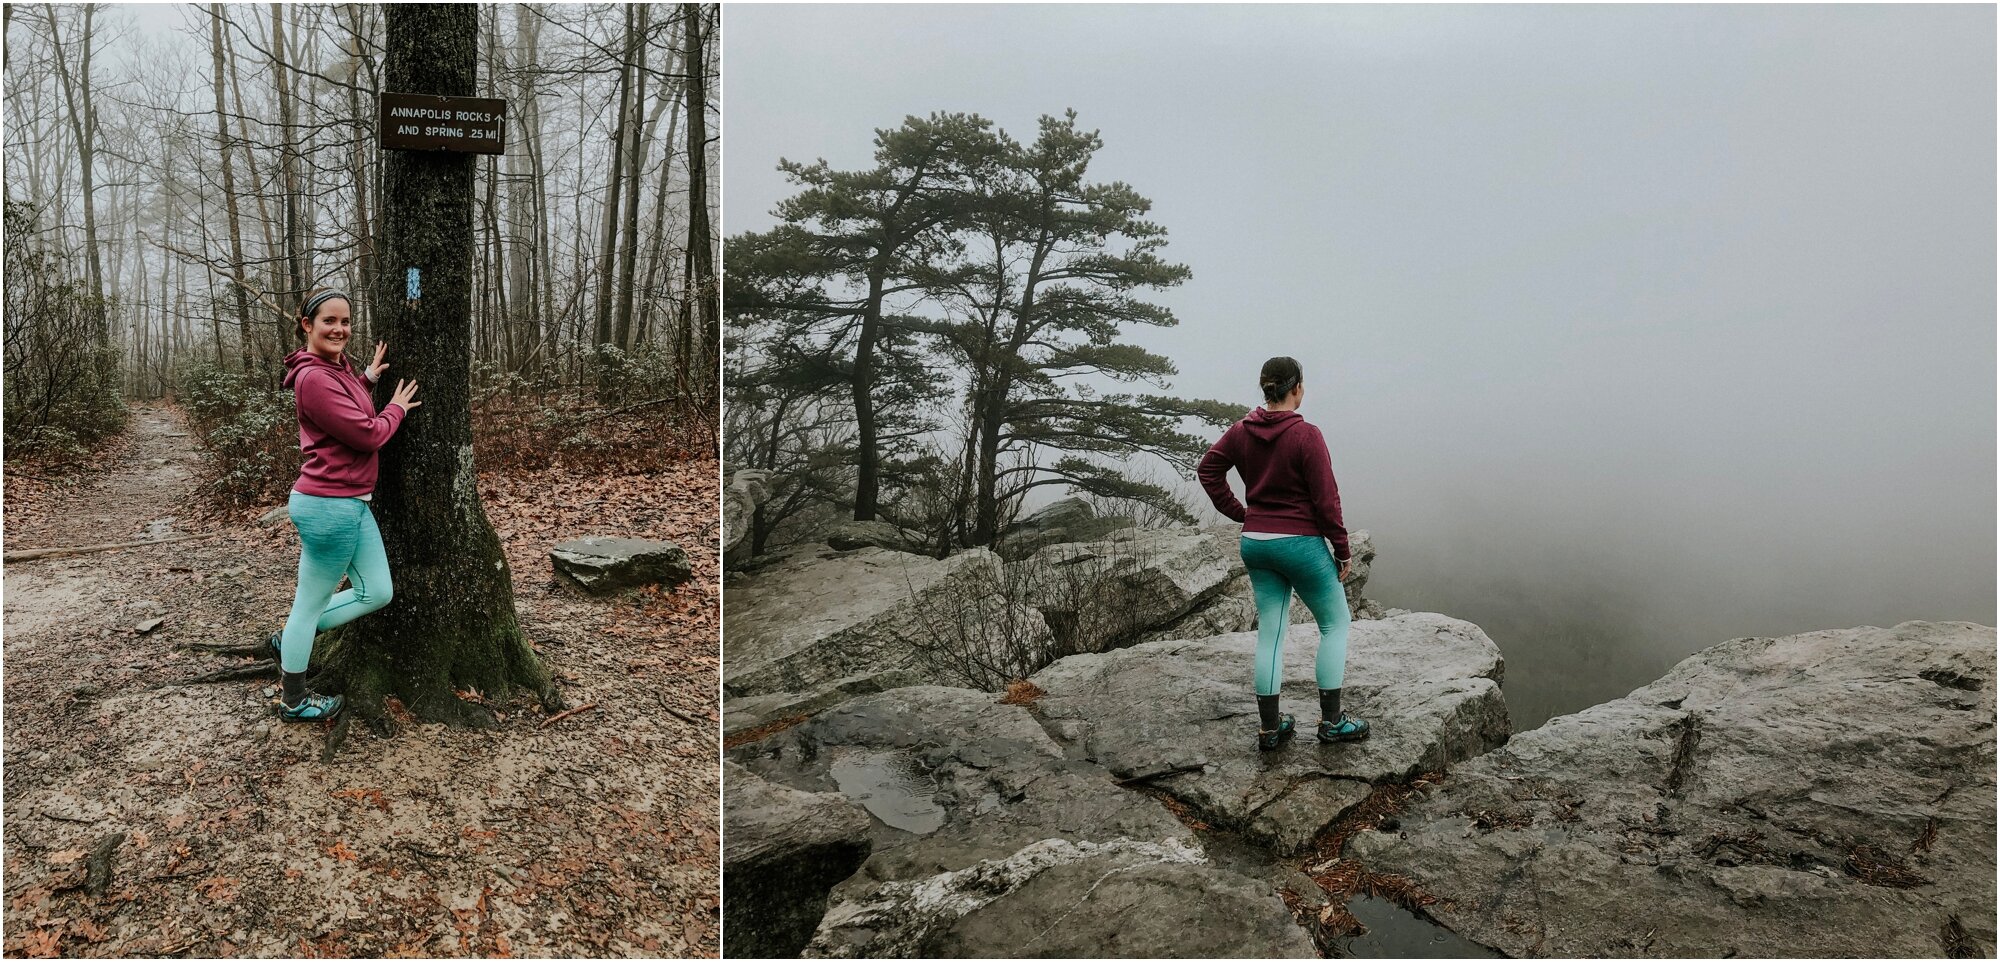   We hiked my favorite hike in Maryland.   Photos: Sarah Brown-Fernandez  